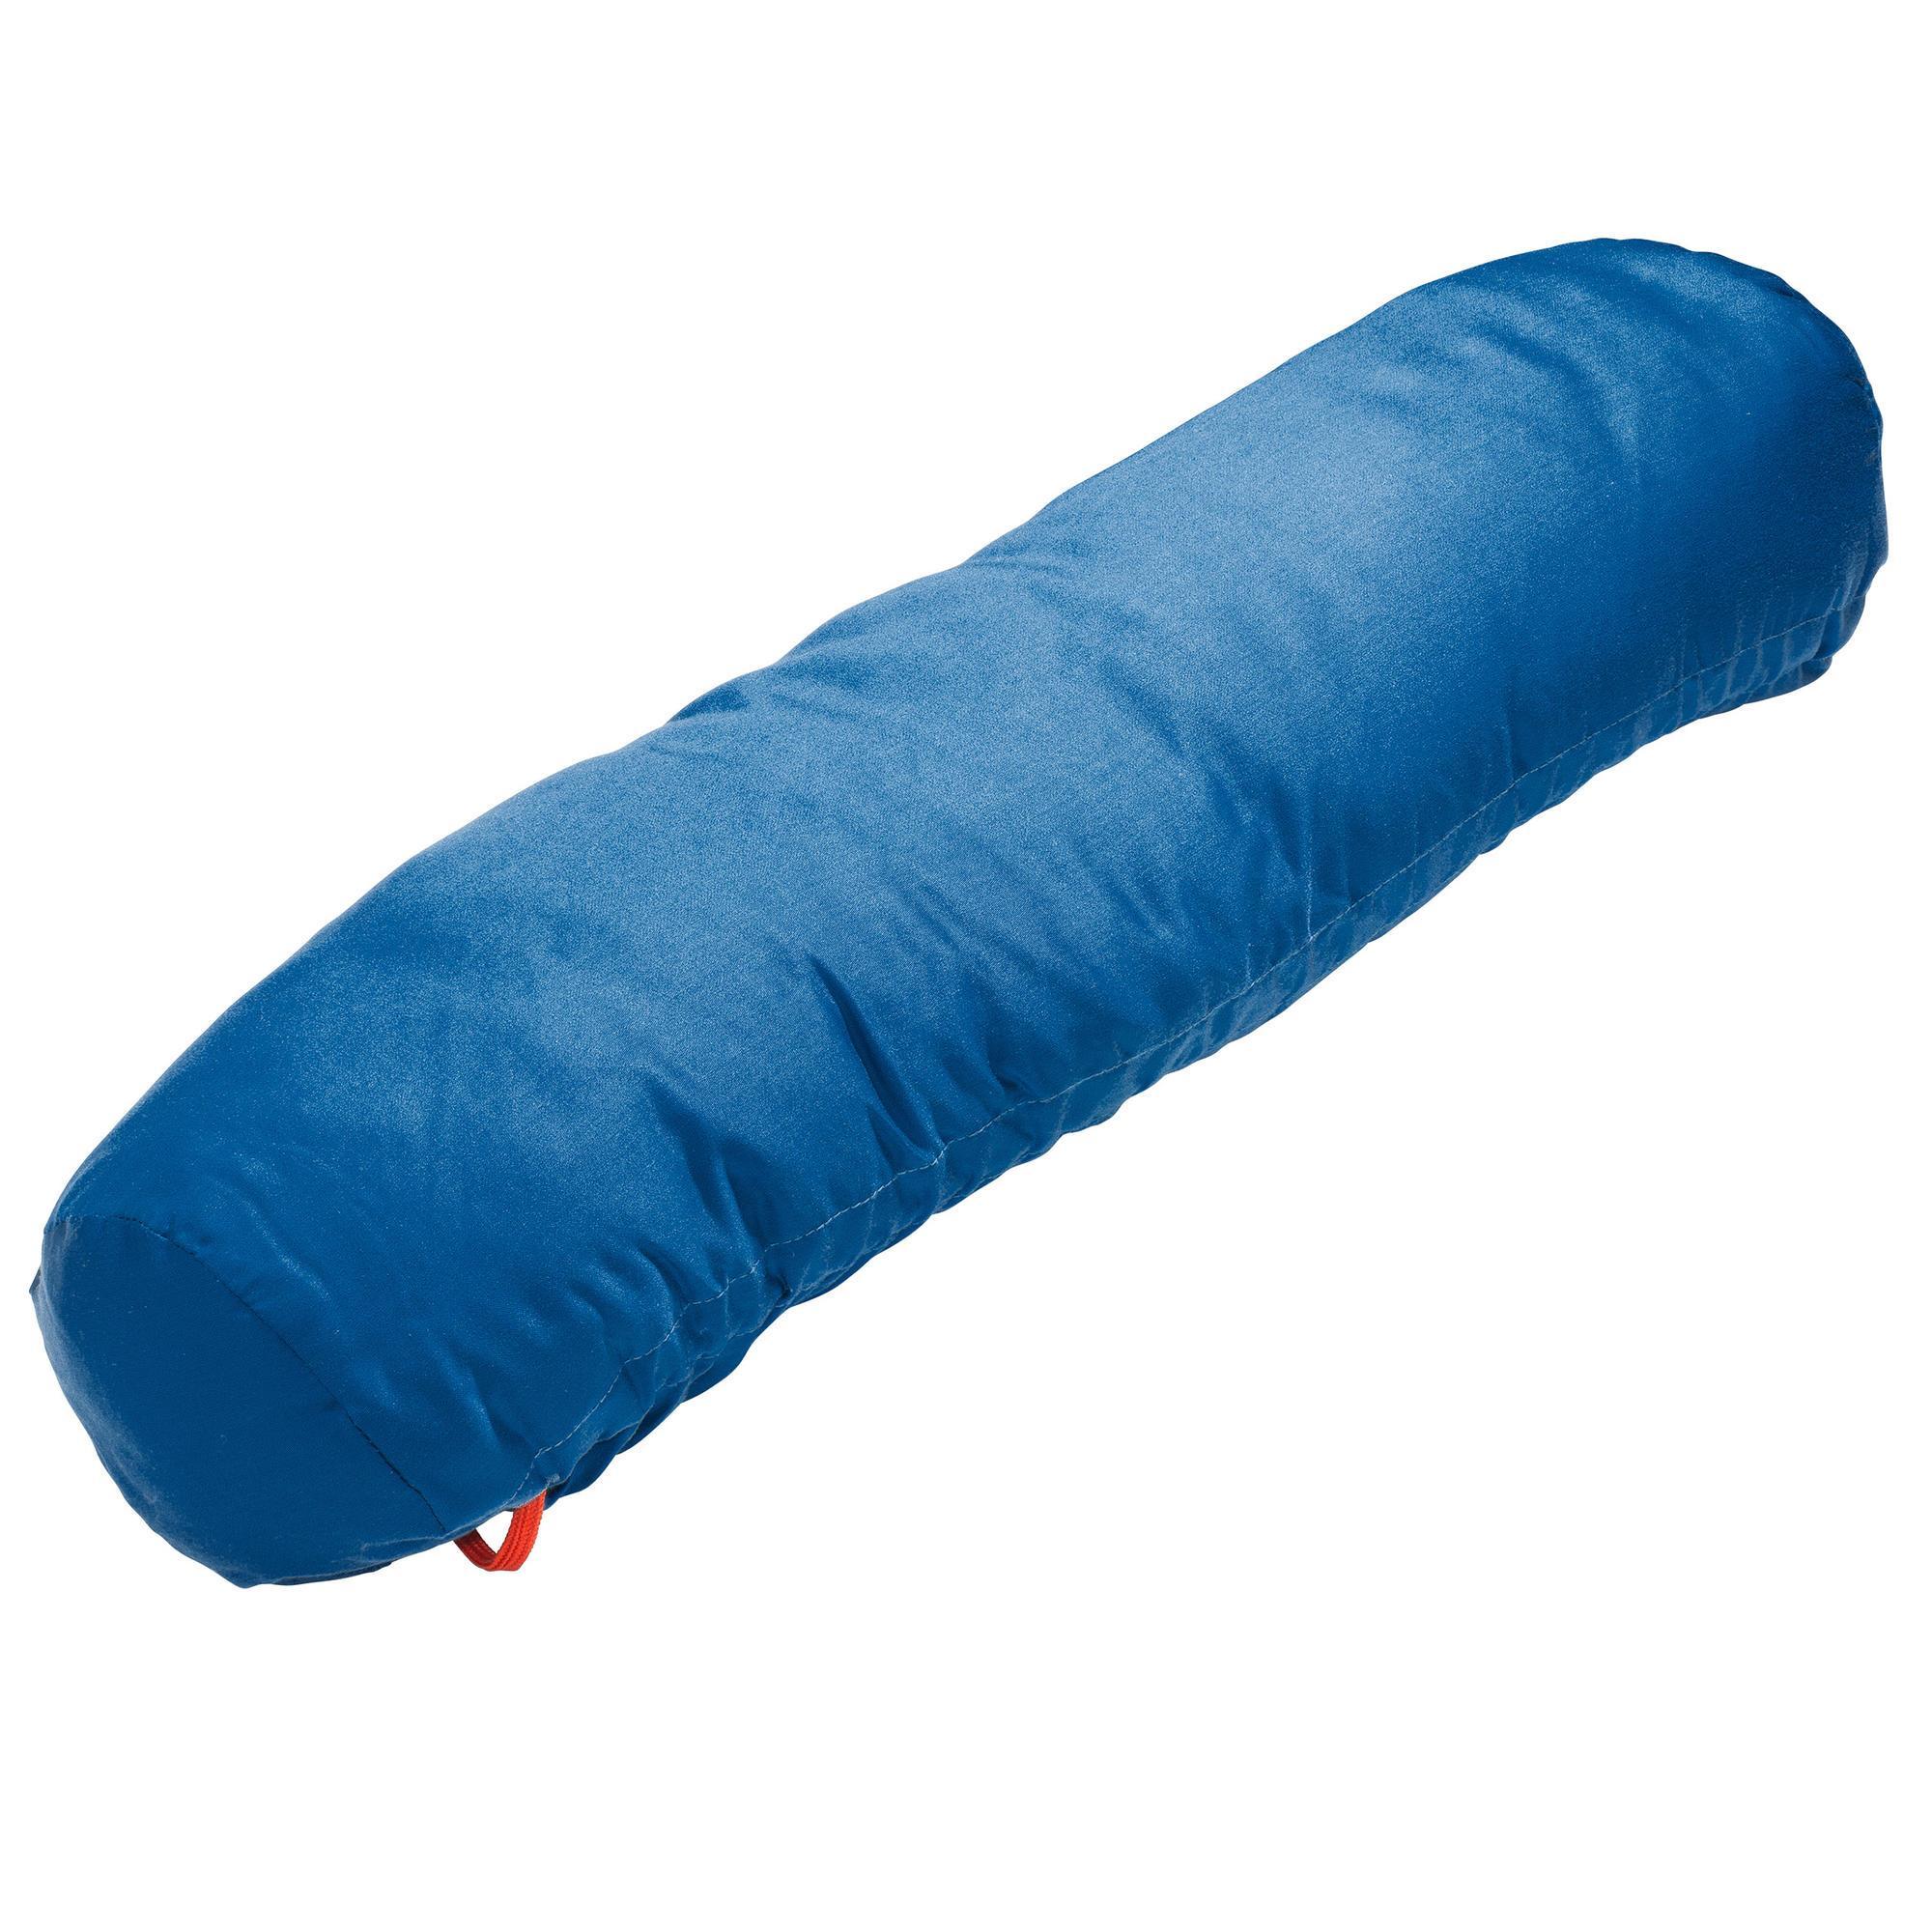 Modulo Camping Pillow - Decathlon